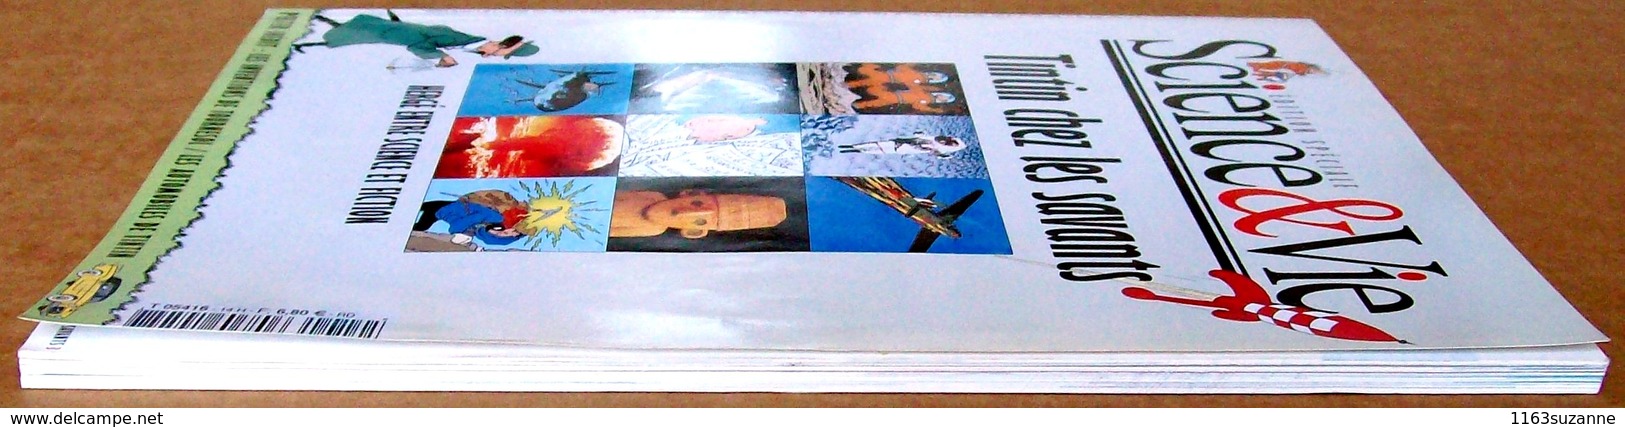 EO avec son poster > TINTIN CHEZ LES SAVANTS - Hergé entre science et fiction (édition spéciale Science & Vie, 2002)